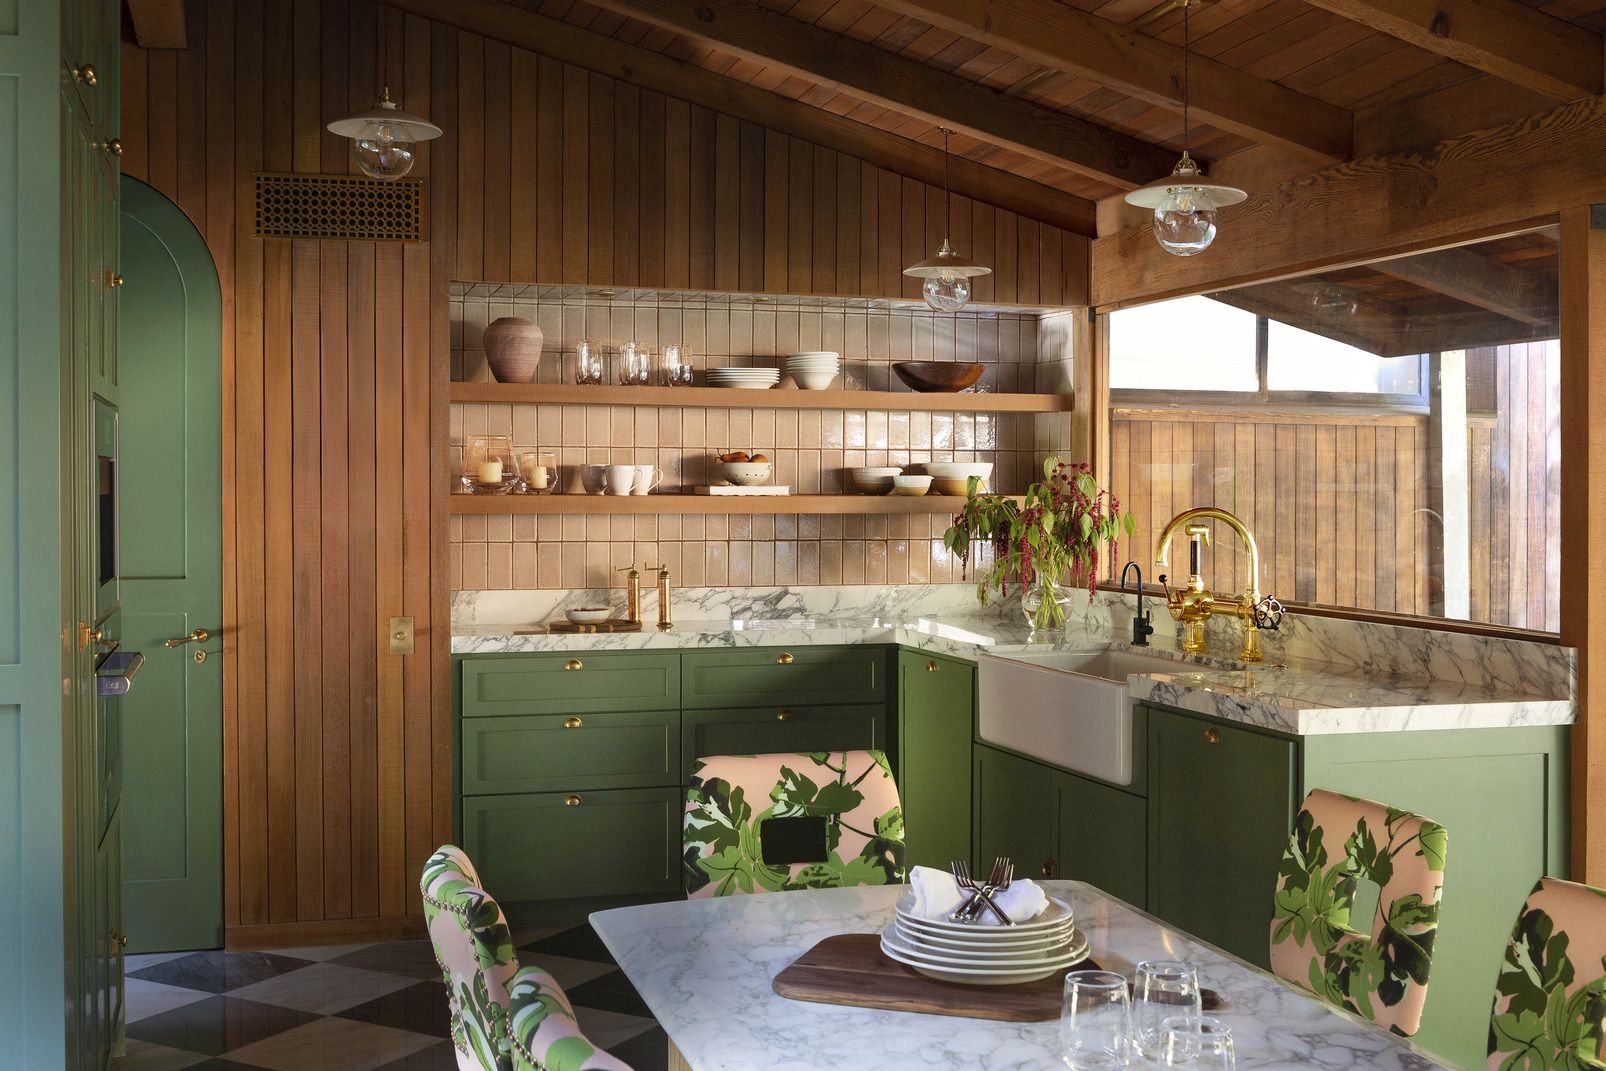 35 Best Kitchen Lighting Ideas - Modern Light Fixtures for Home ...